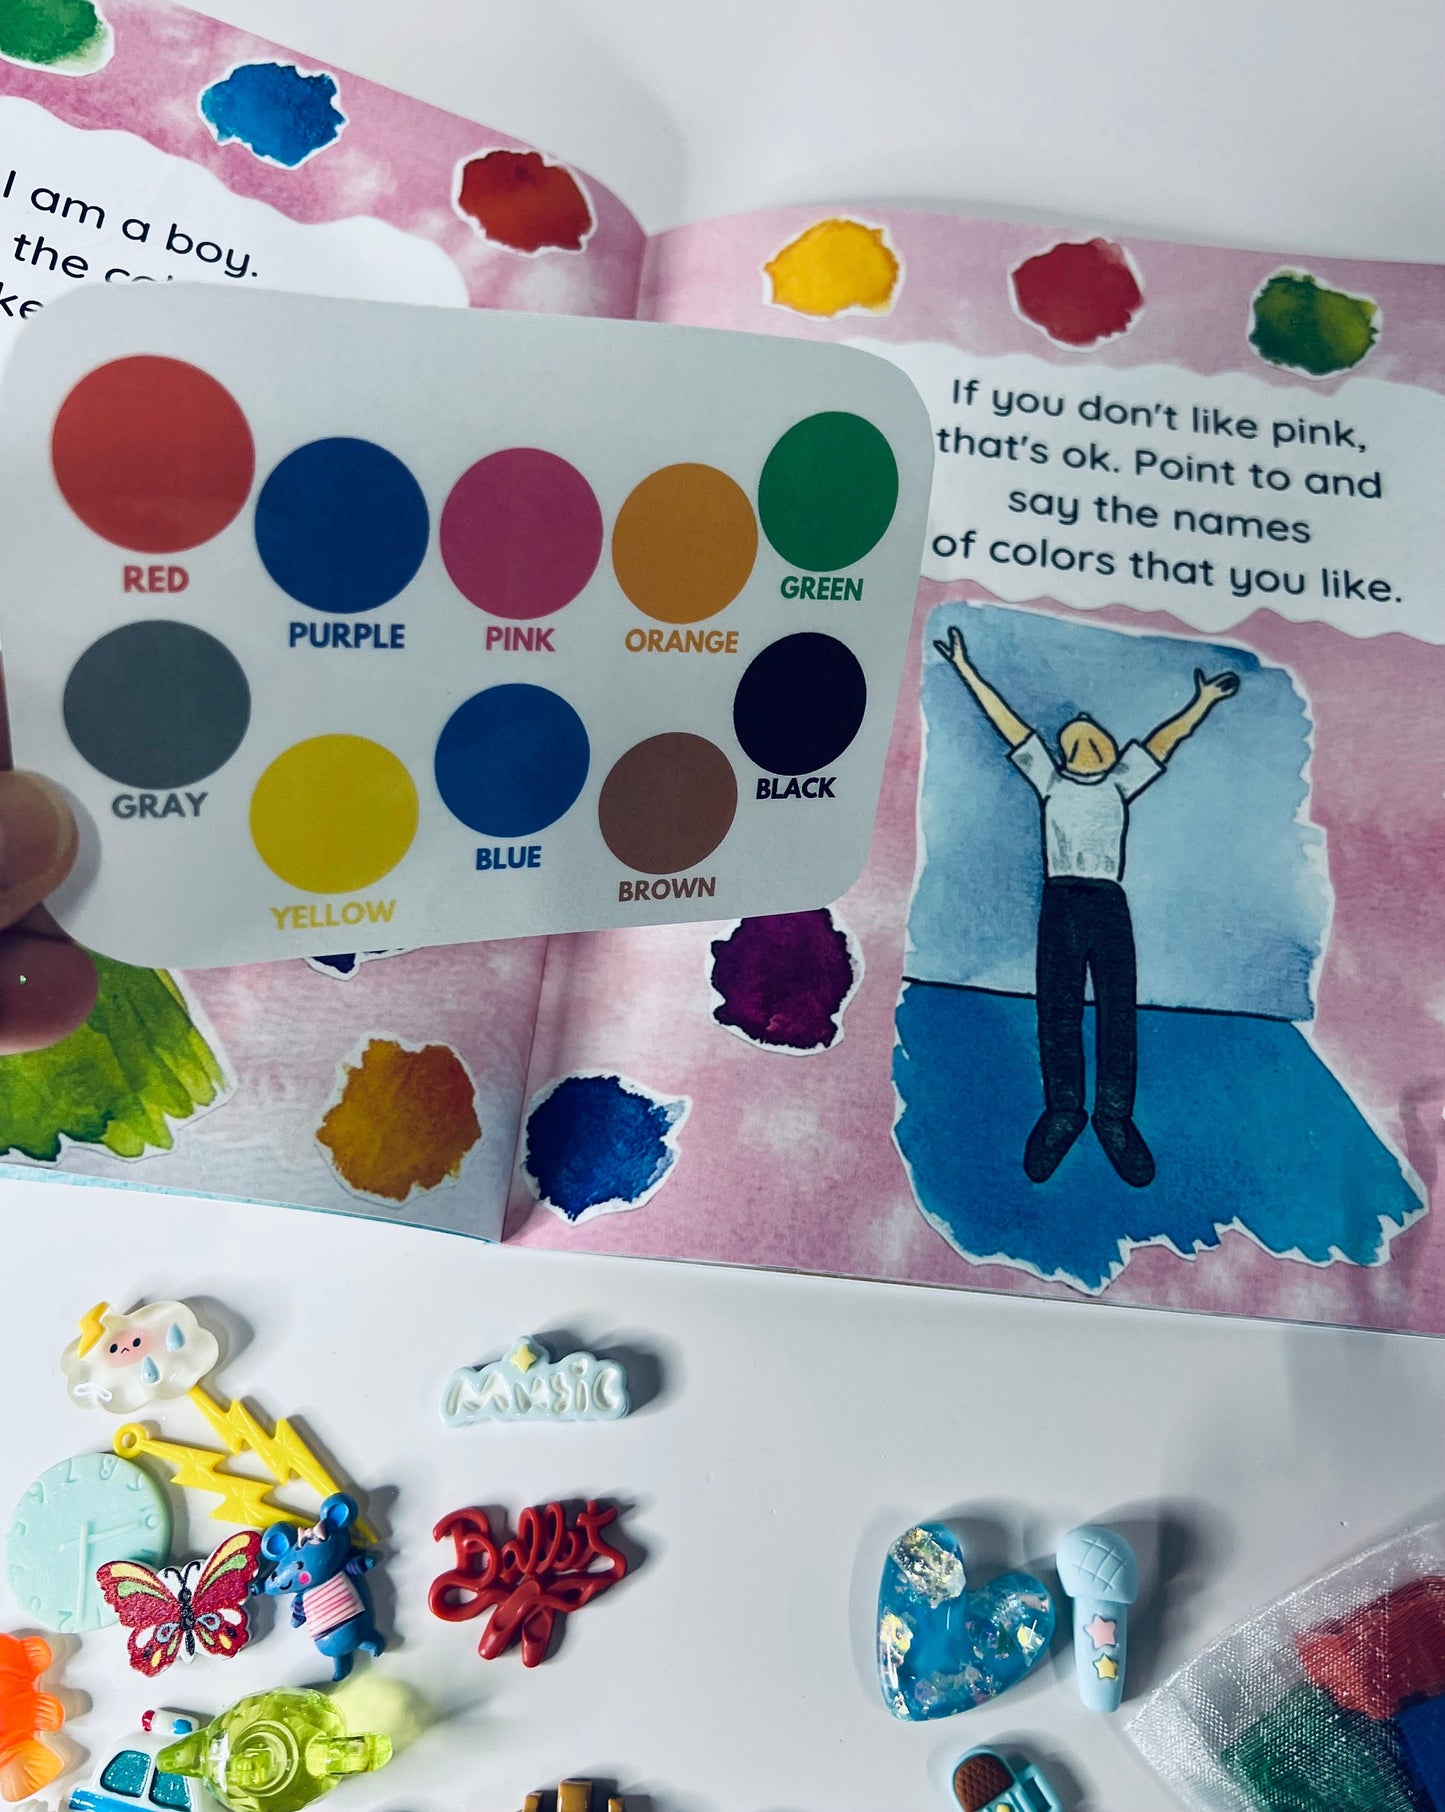 Kit de cuentos - Libro inclusivo con objetos de cuento - Libro sobre ser amable y respetuoso con las diferencias - Libro de neurodiversidad - Los niños también bailan